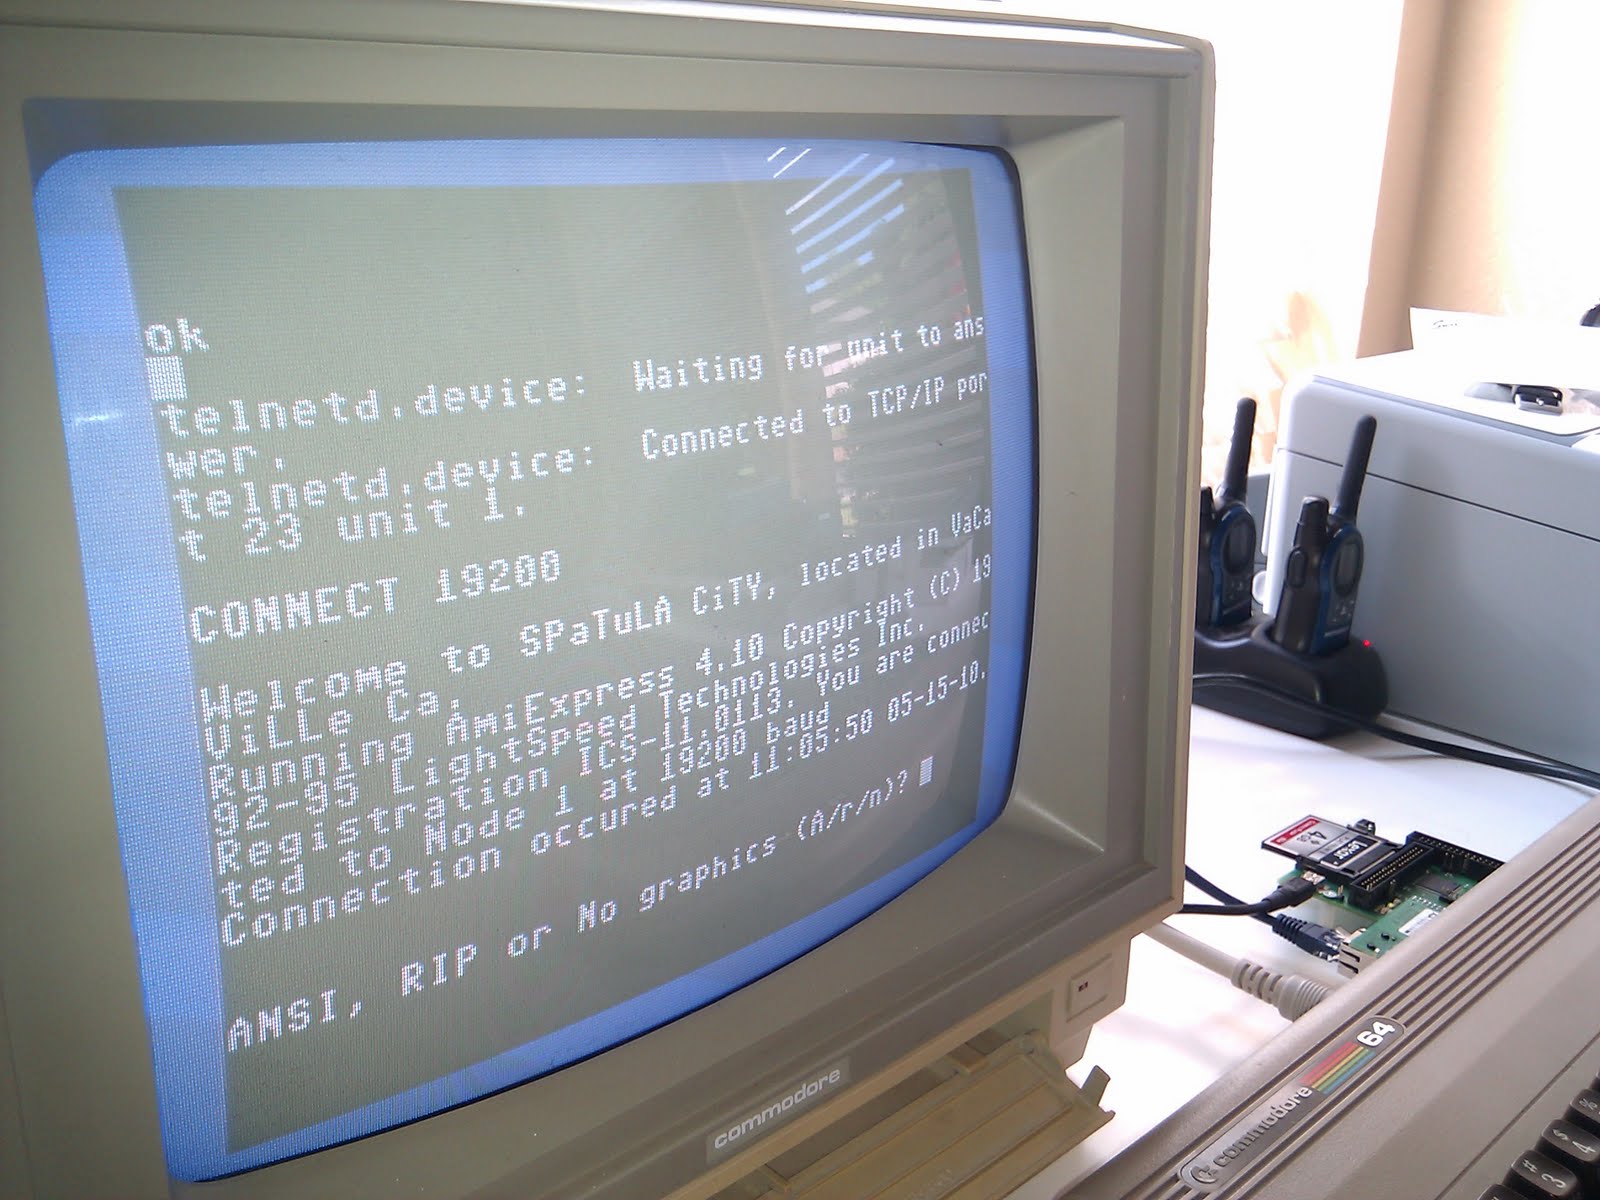 My Commodore Commodore 64